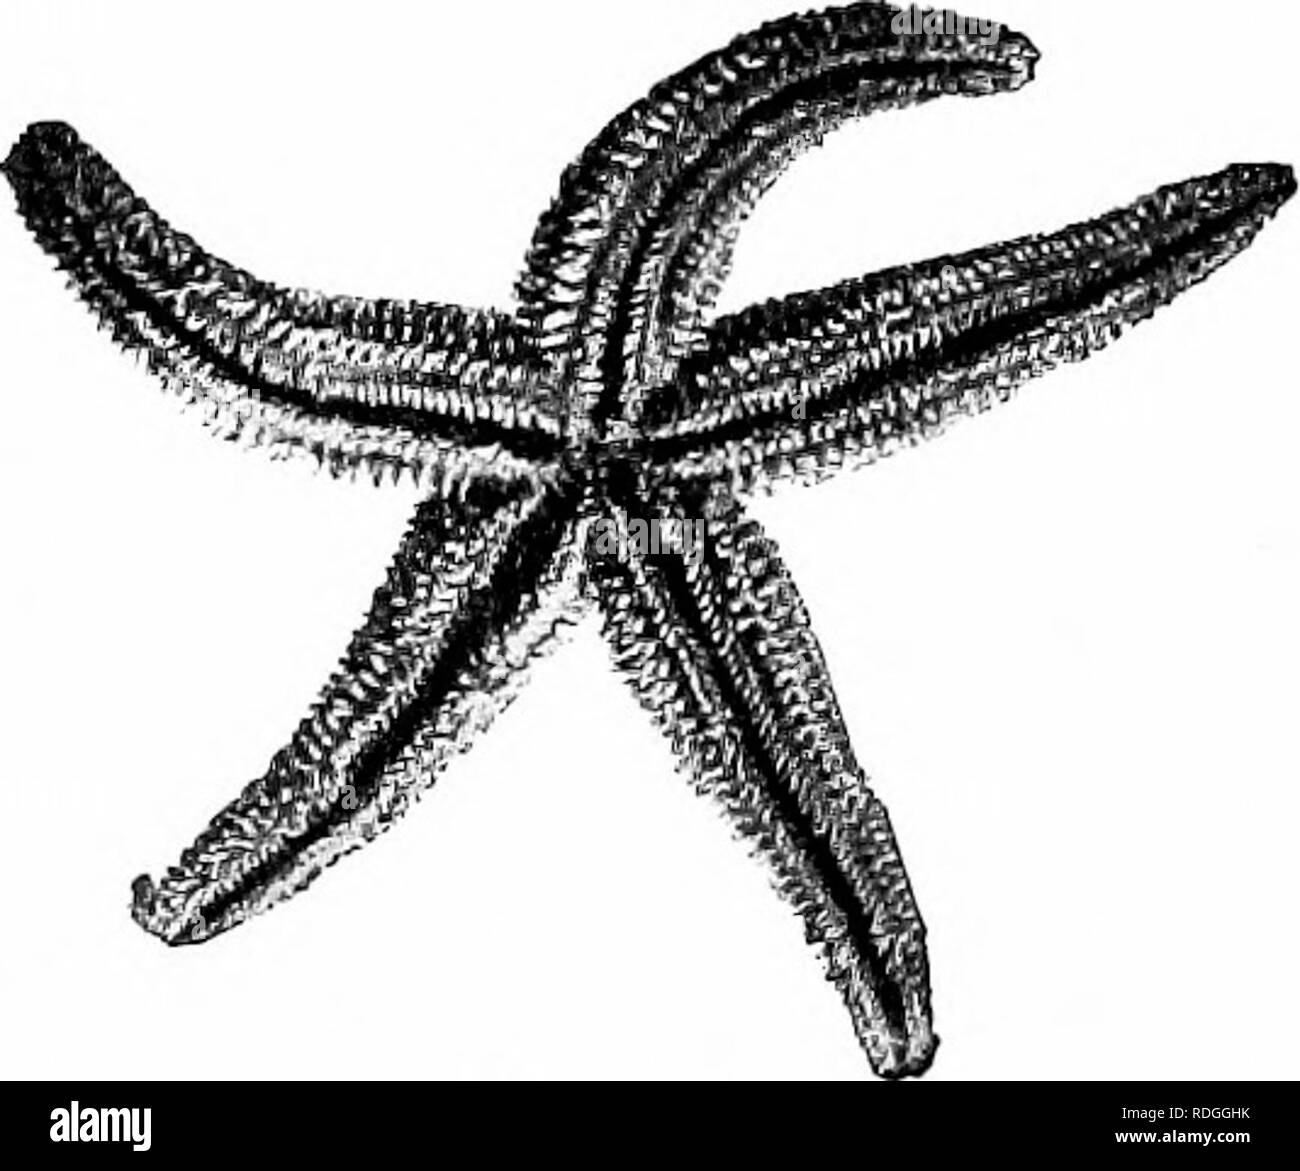 . Ein Lehrbuch in die Allgemeine Zoologie. Zoologie. X. Seesterne, Seeigel, SCHLANGENSTERNE Zweig IX. - Stachelhäuter {Echinos (Wirbelsäule), hedge-hog, derma, Haut) Die meisten der Mitglieder dieser Branche über die Oberfläche des Körpers mit Stacheln und gedachten, daher der Name, Echinoder-mata, stacheligen Skins. In allen Stachelhäuter die Teile des Körpers sind radial angeordnet. In fast allen gibt es ein exoskelett aus kalkhaltigen Platten. Ohne Ausnahme führten sie im Meer zu finden sind. Ein Beispiel für die Branche - die Seesterne Form und radiale Symmetrie der Seesterne. - Die gemeinsame Starfish hat einen Stern-Sh Stockfoto